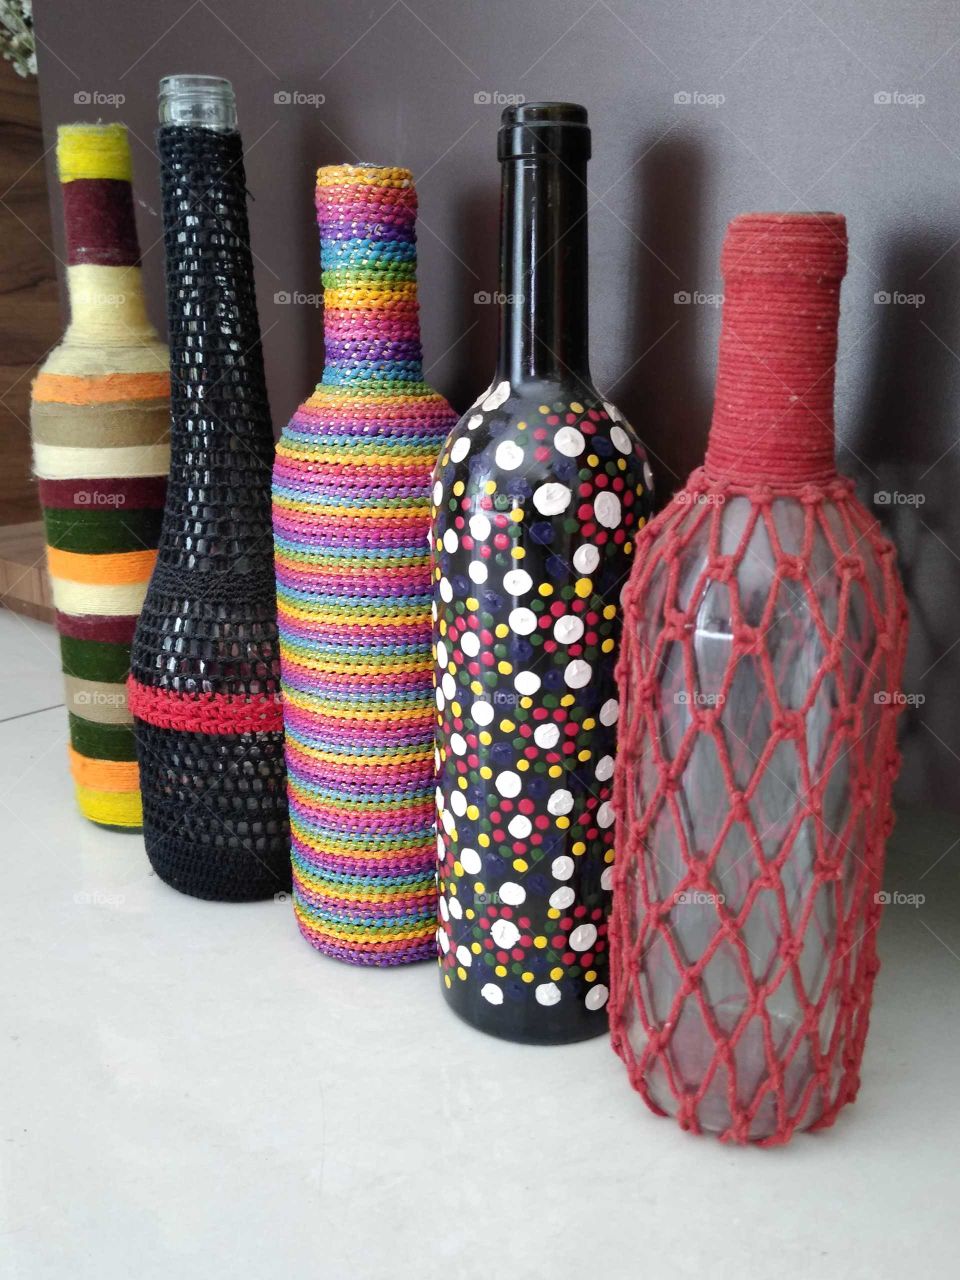 a beautiful homemade designed bottles